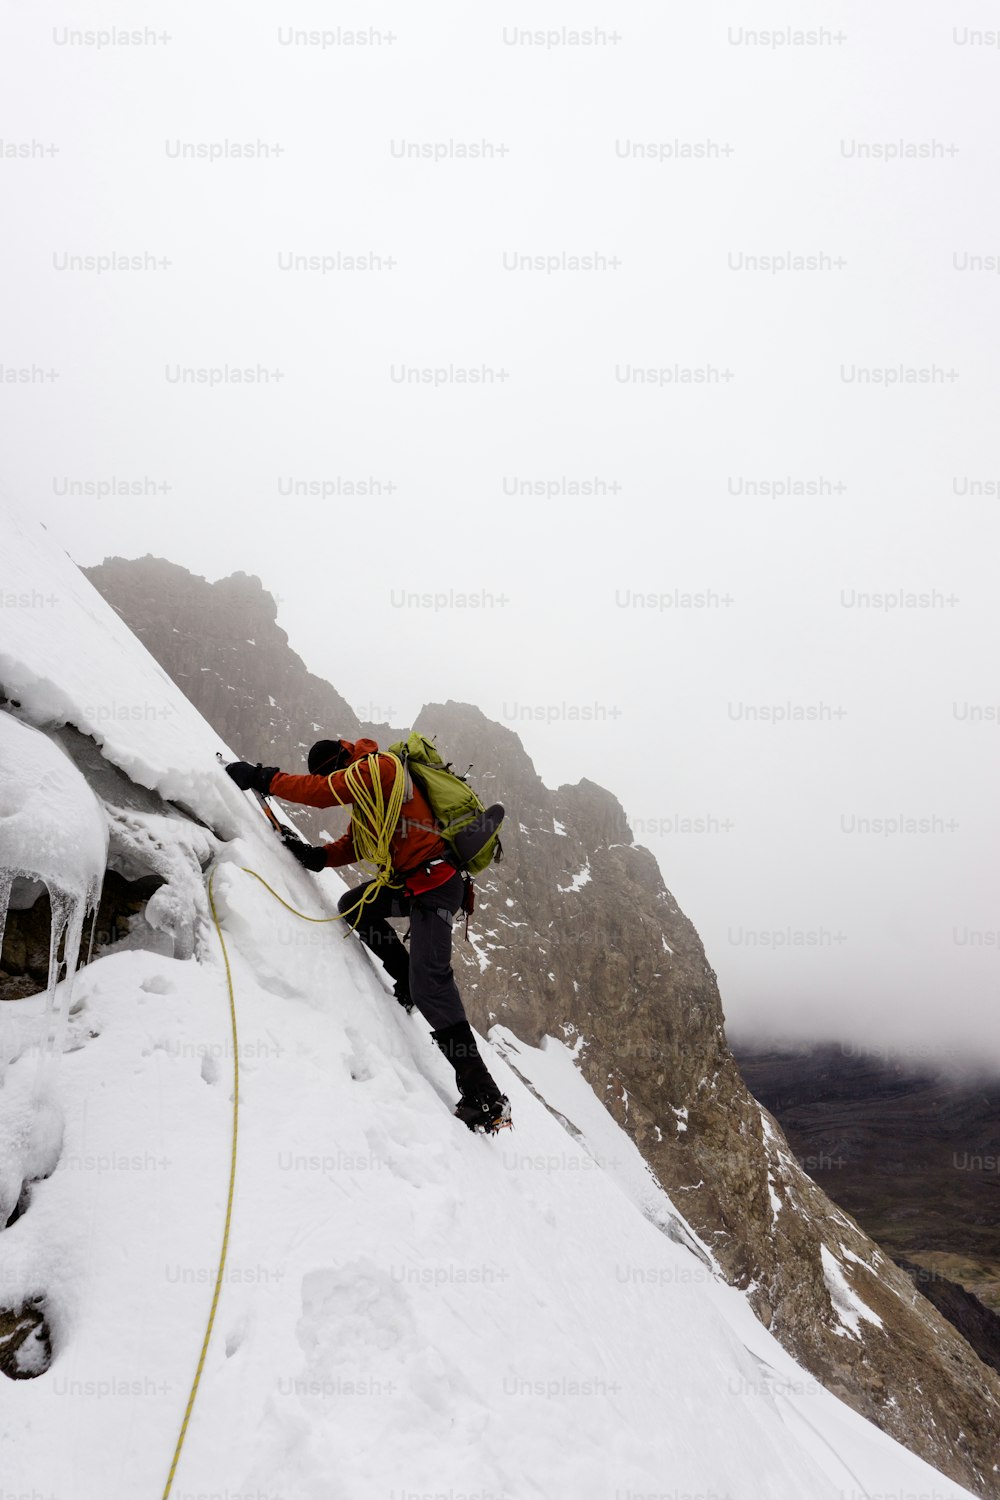 ペルーのアンデス山脈にあるコルディレラ・ブランカの急峻で危険な氷河を登る赤いジャケットを着た男性登山家